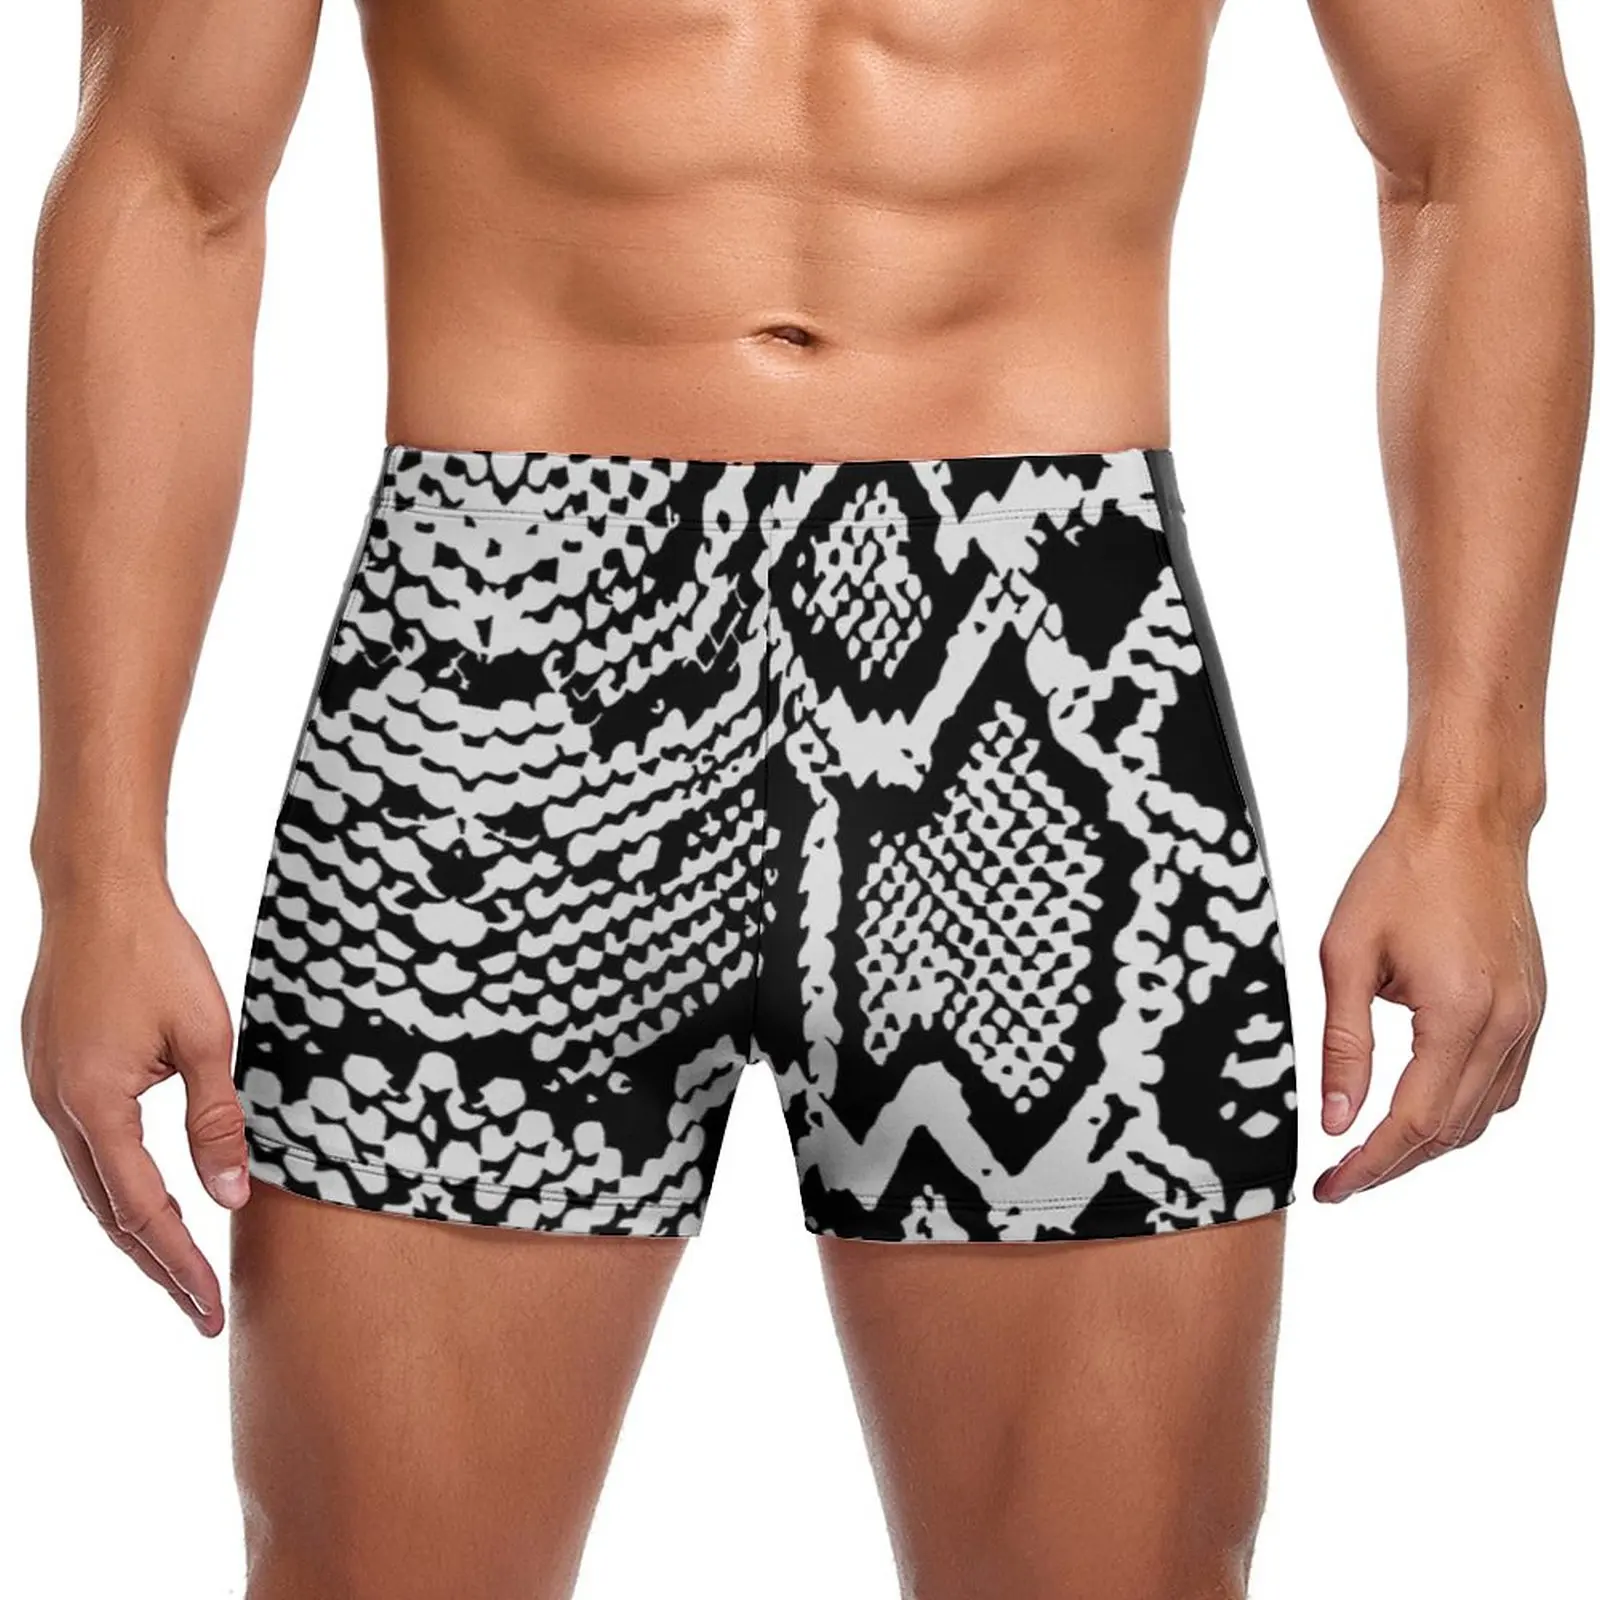 

Black White Snakeskin Swimming Trunks Animal Snake Skin Print Durable Fashion Swim Boxers Large Size Beach Man Swimwear